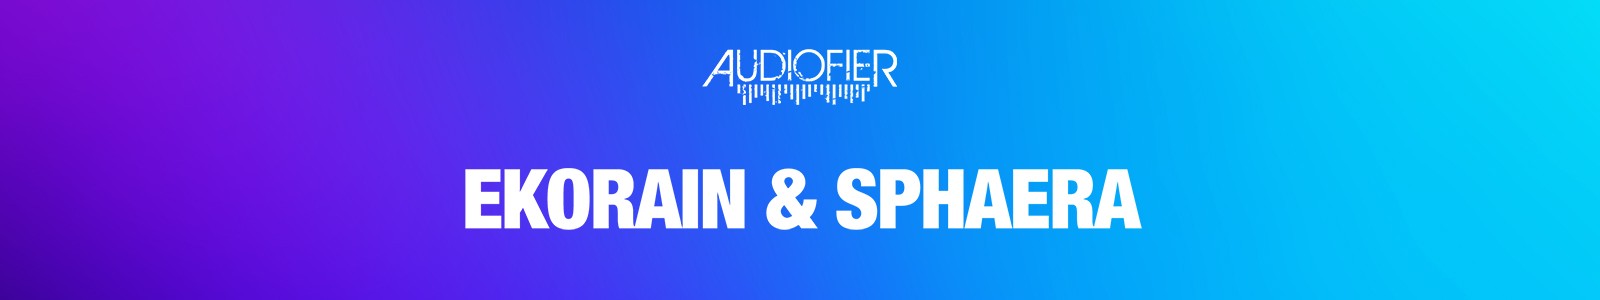 Ekorain & Sphaera Bundle by Audiofier